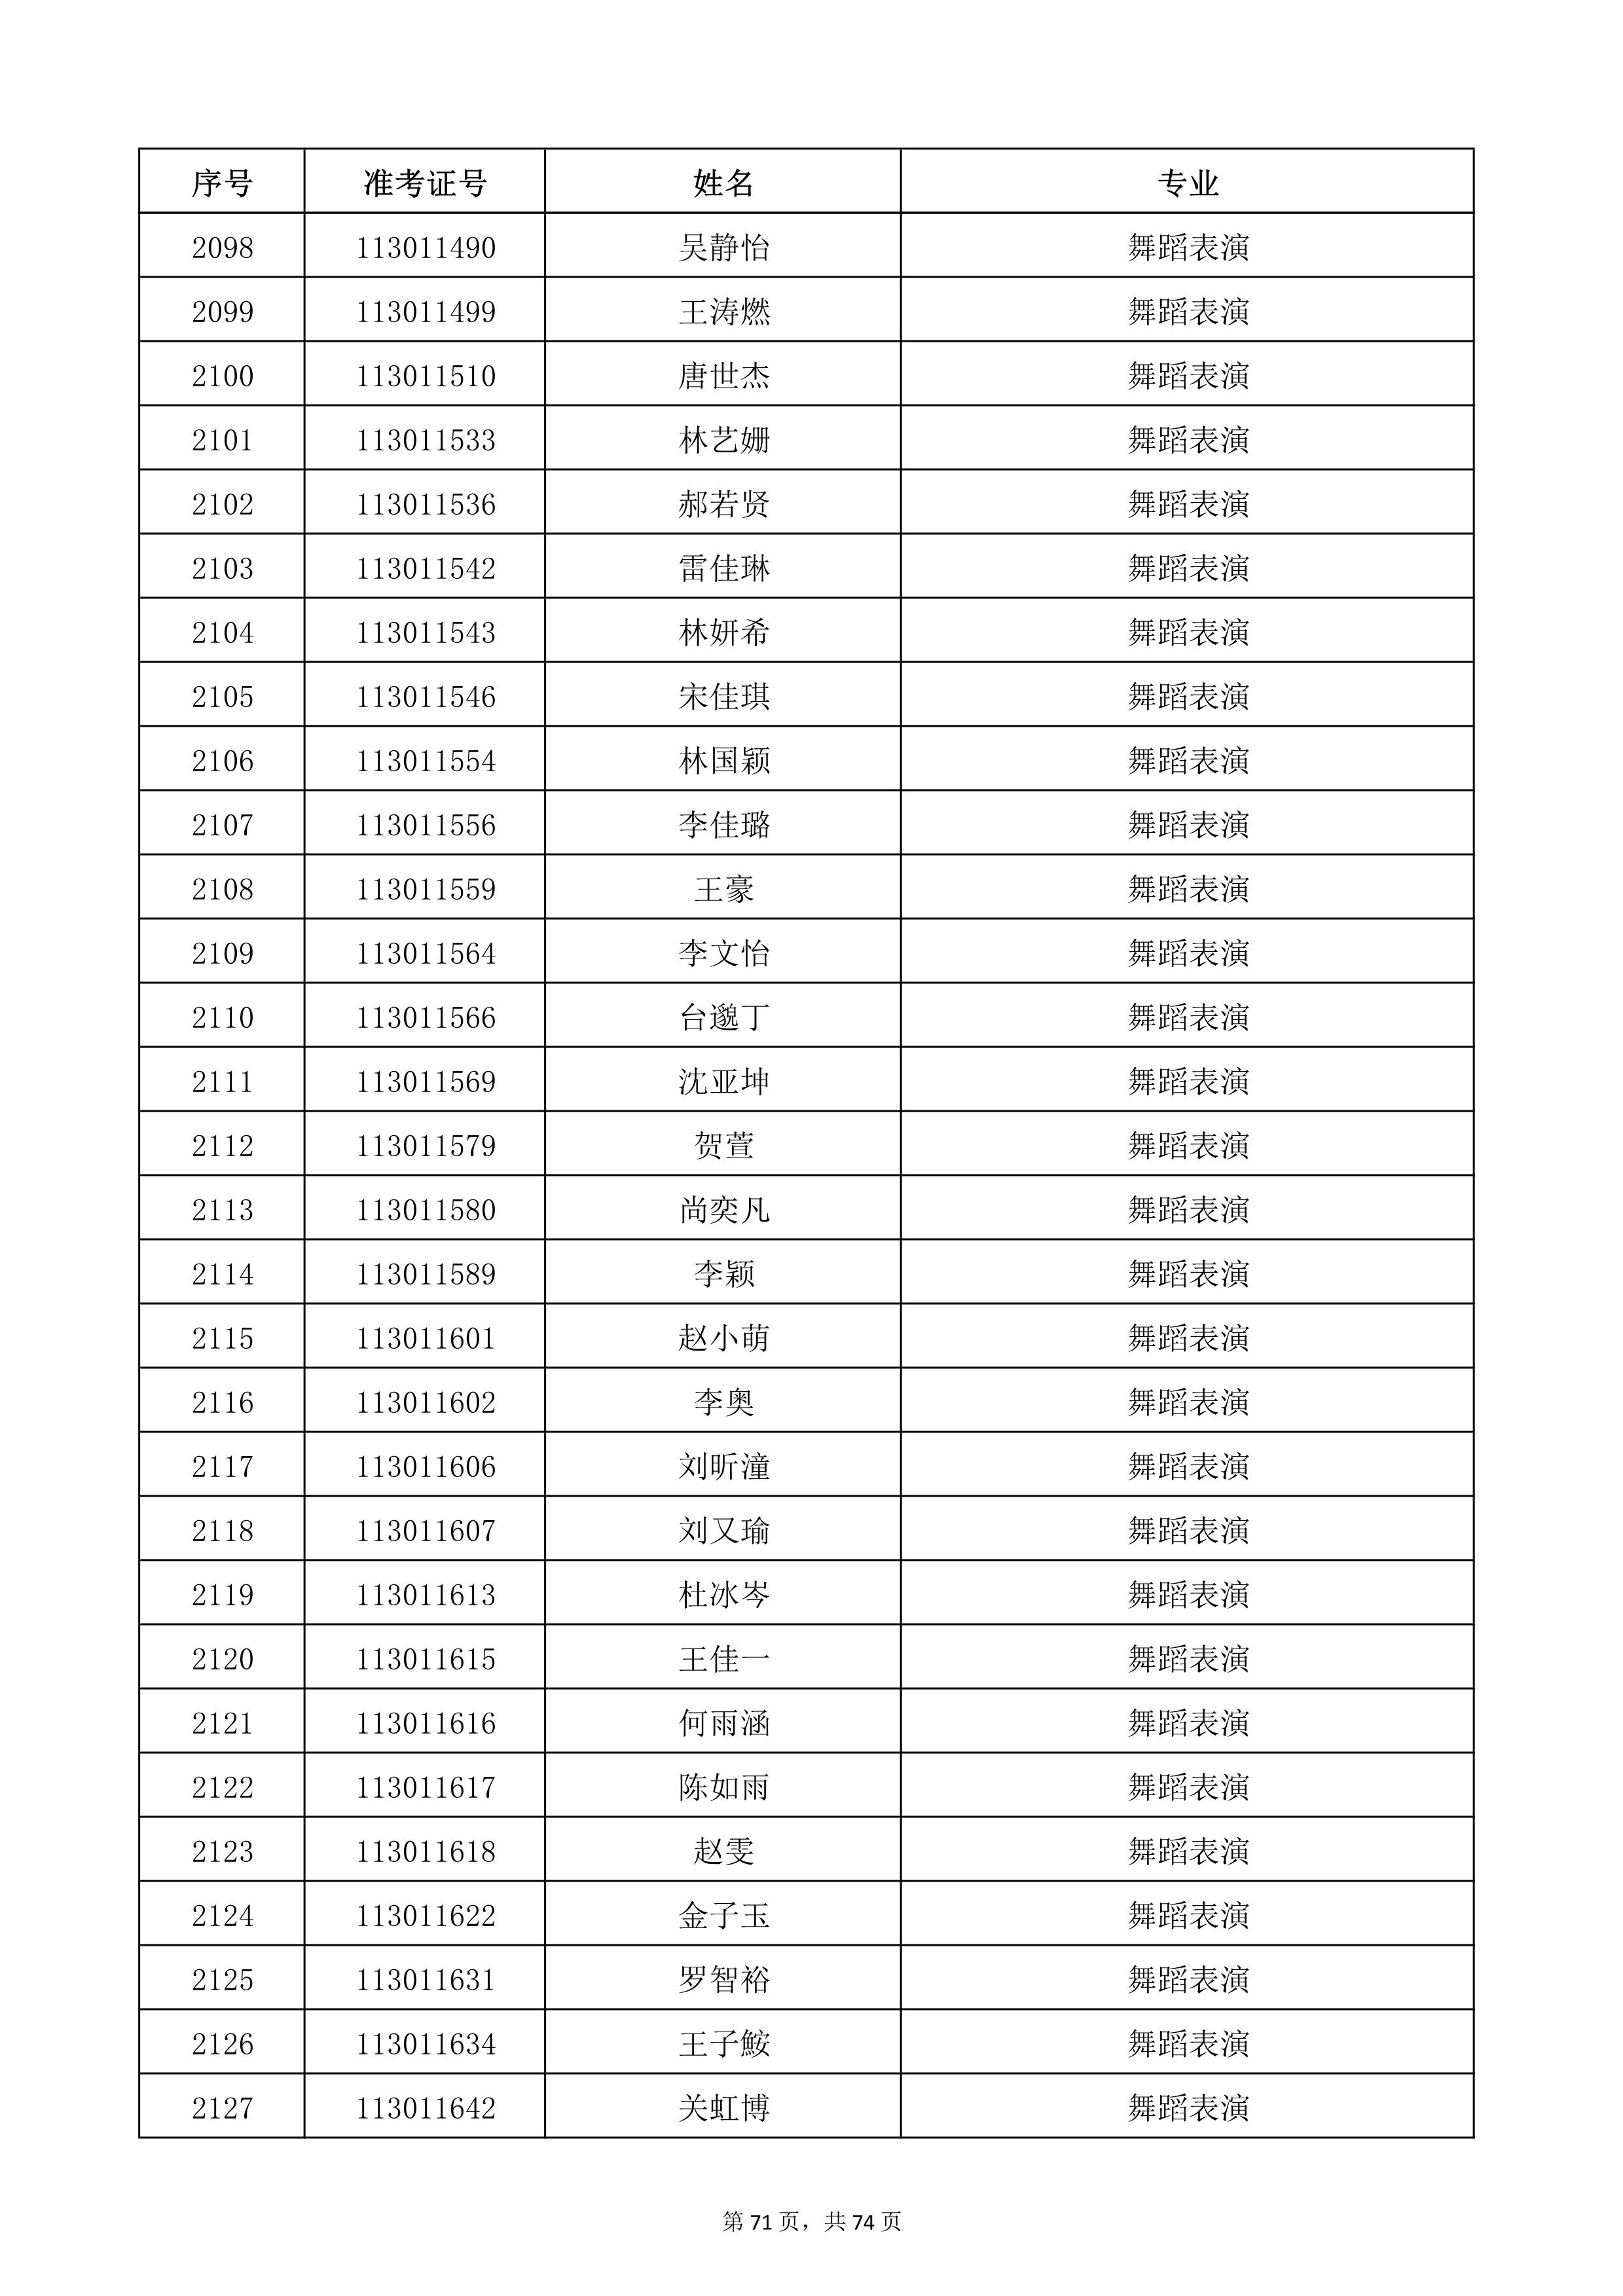 天津音乐学院2022年本科招生考试复试名单_71.jpg